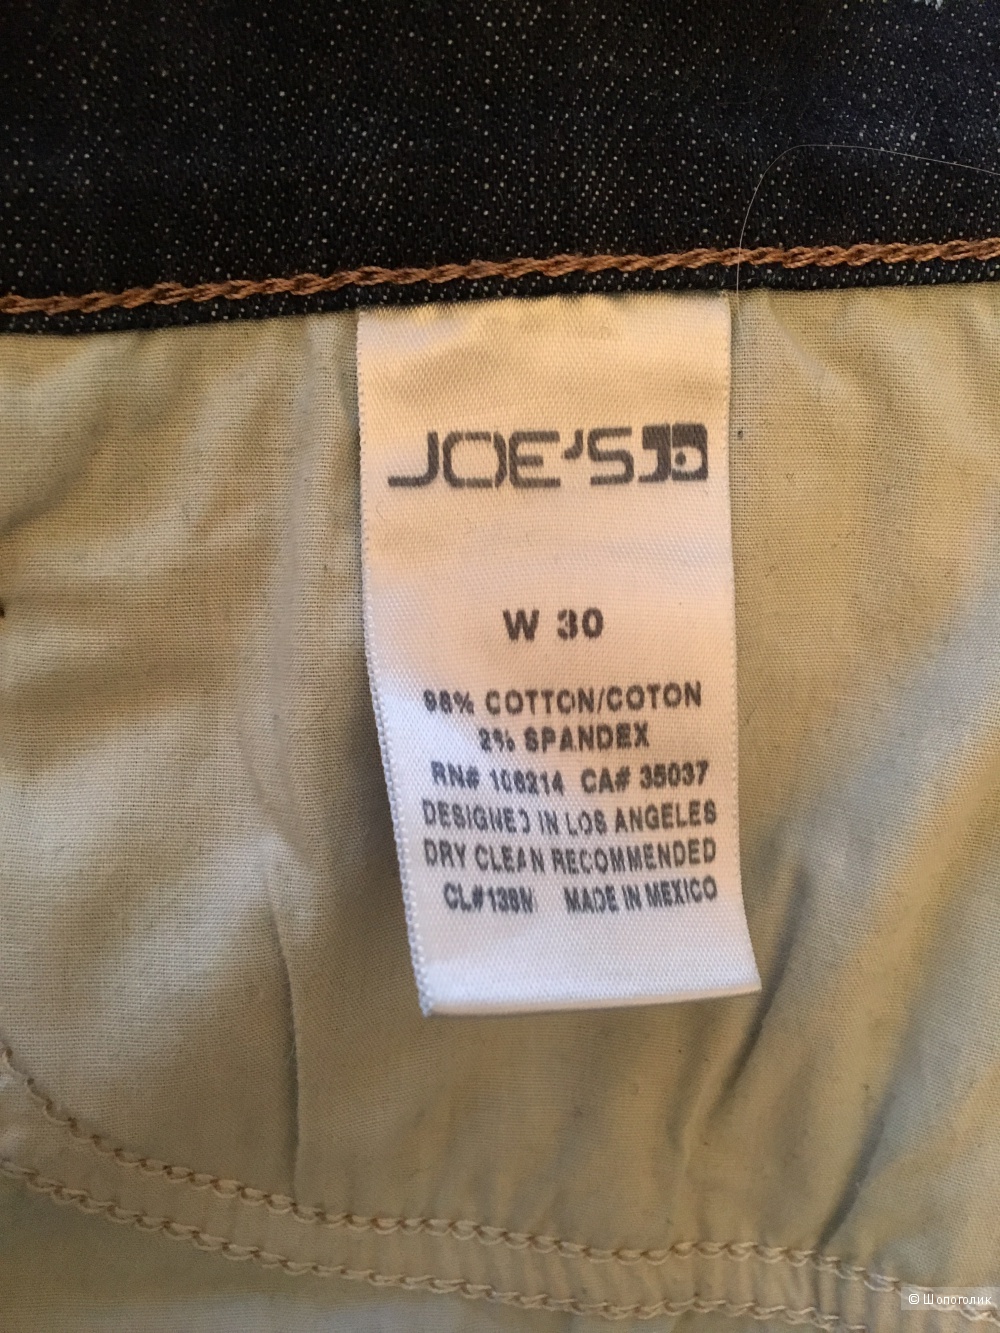 Темно-синие укороченные джинсы Joe's Jeans, размер 30